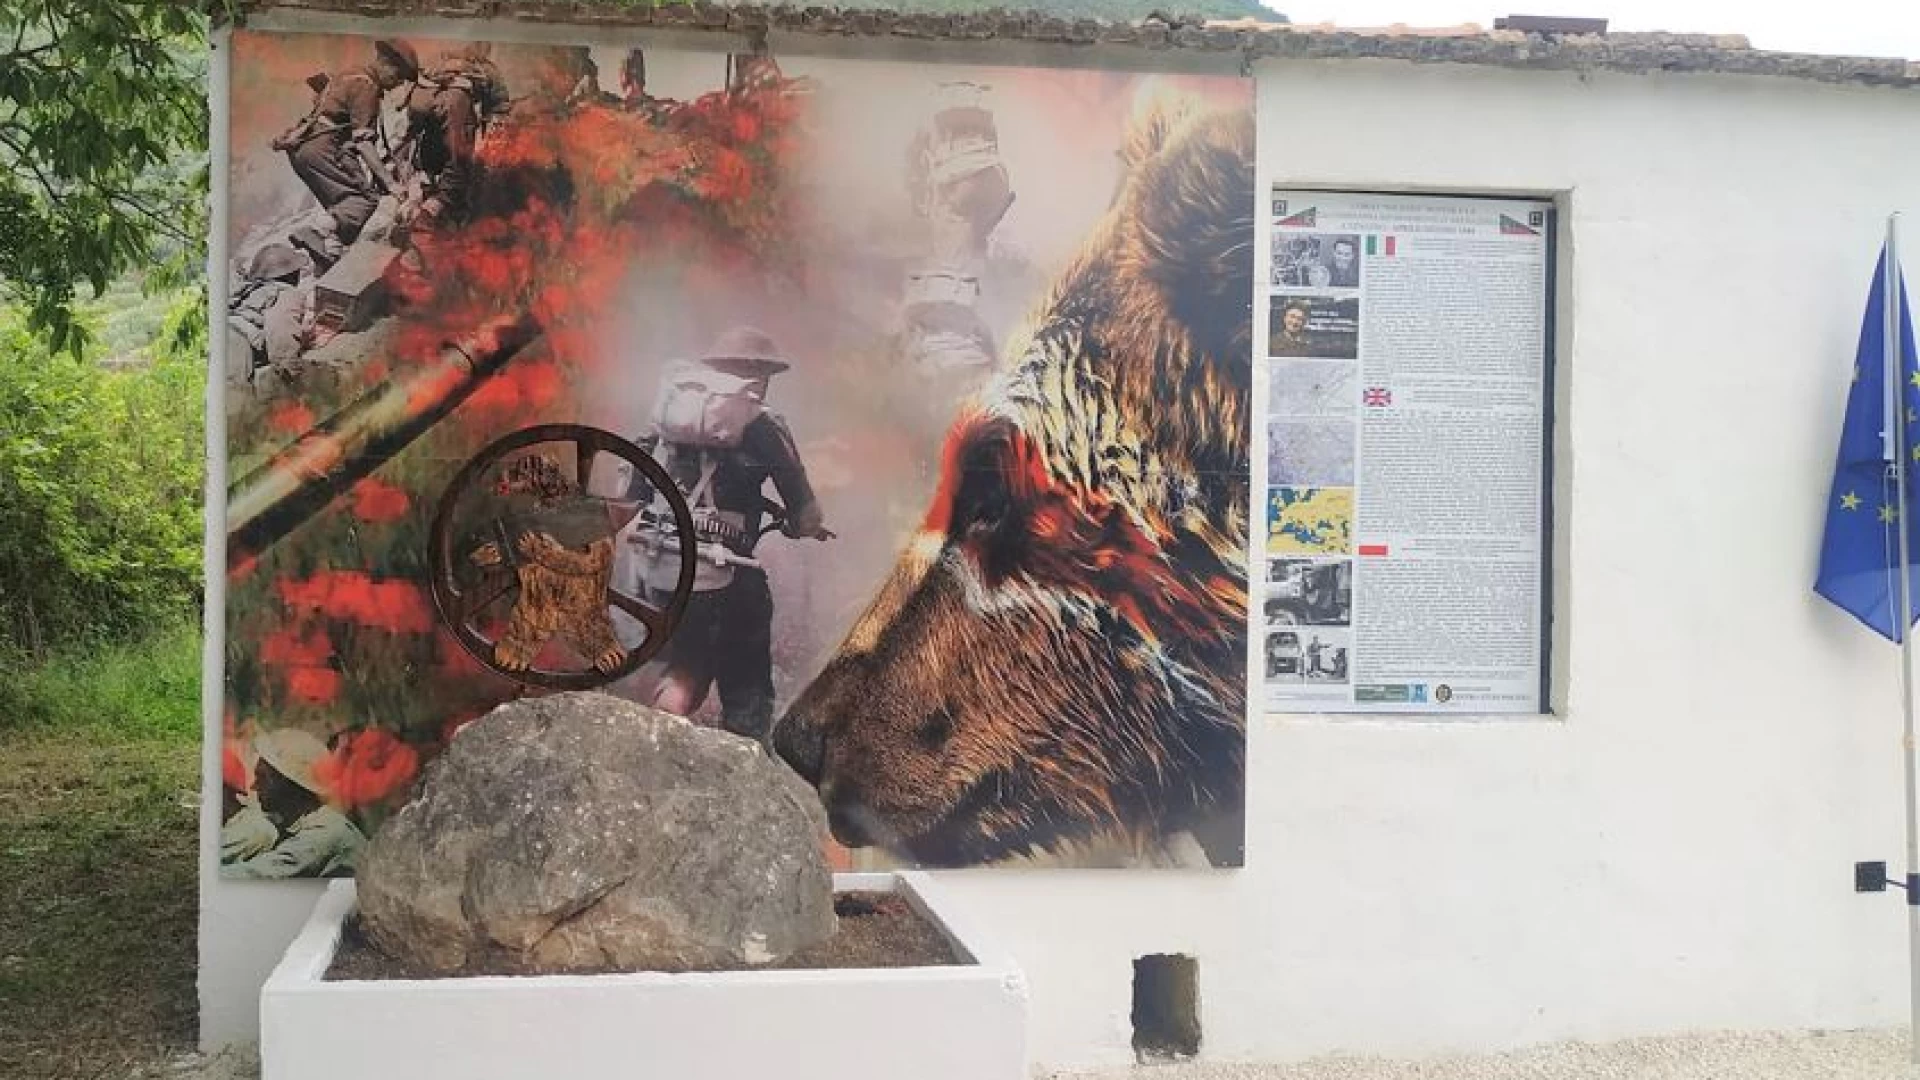 Il Monumento dedicato all’Orso Wojtek fa il pieno di turisti e curiosi. Il 6 ottobre previste comitive in visita a Venafro.